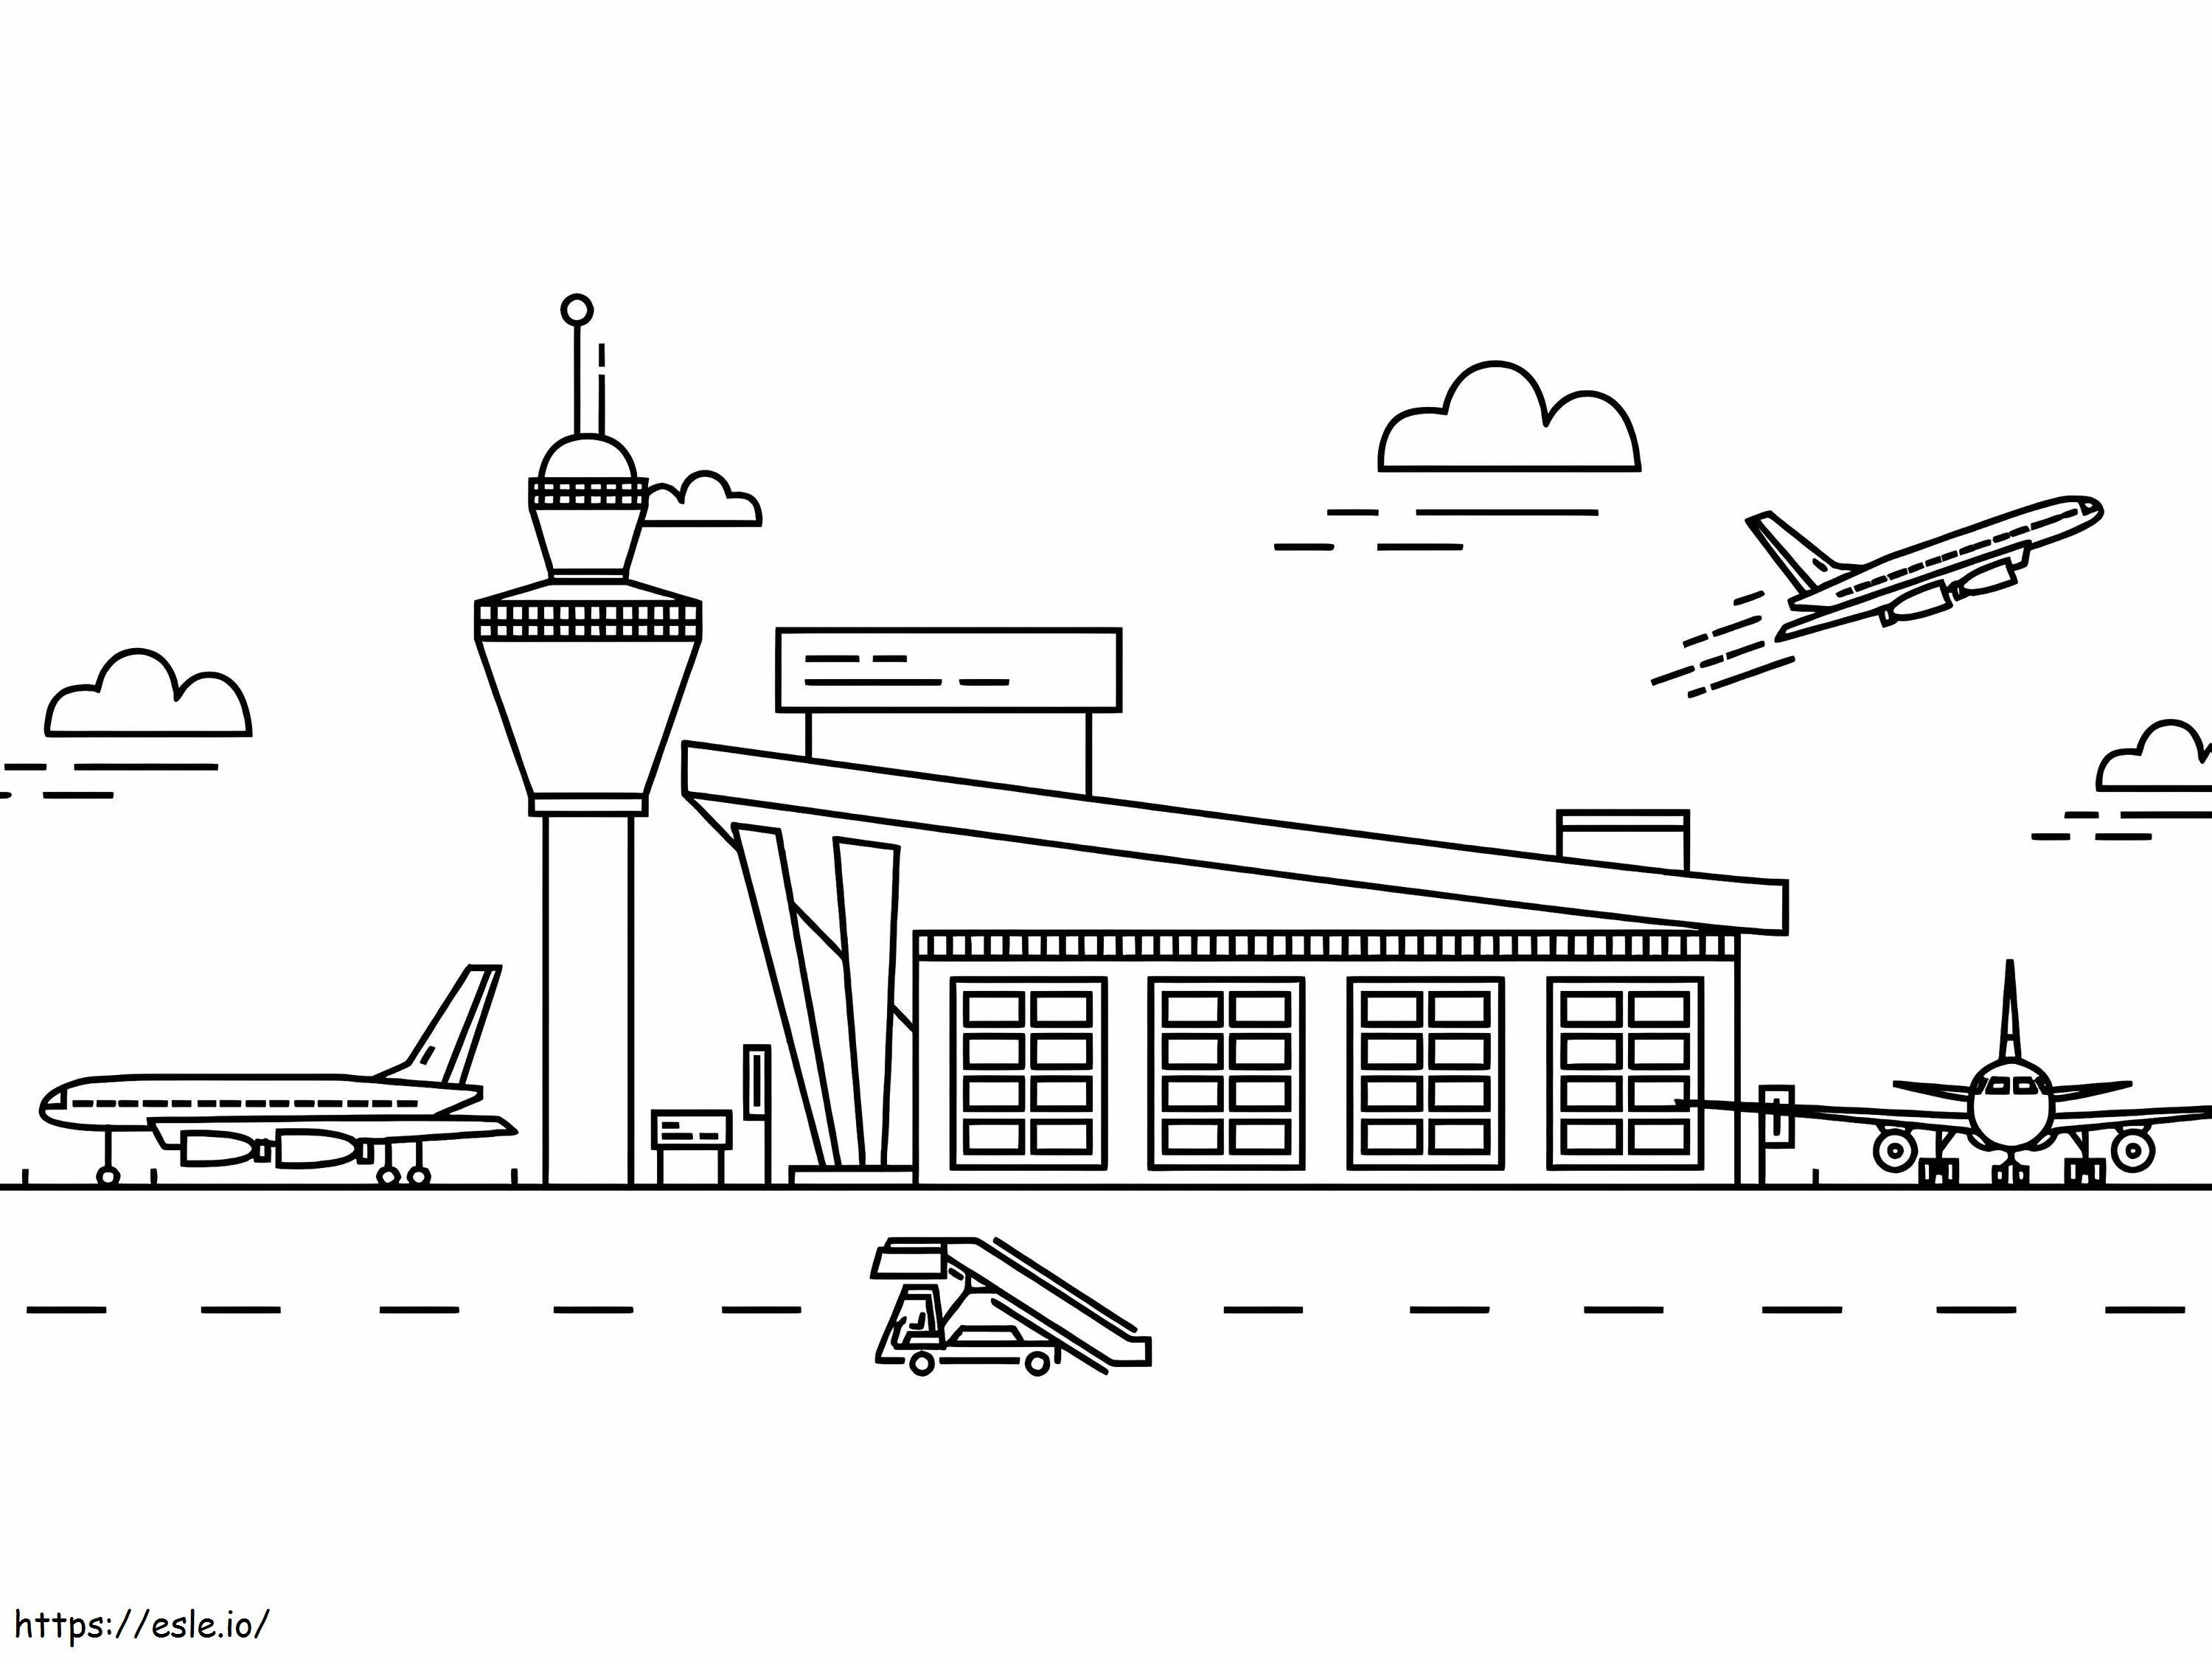 Aeroporto para impressão grátis para colorir